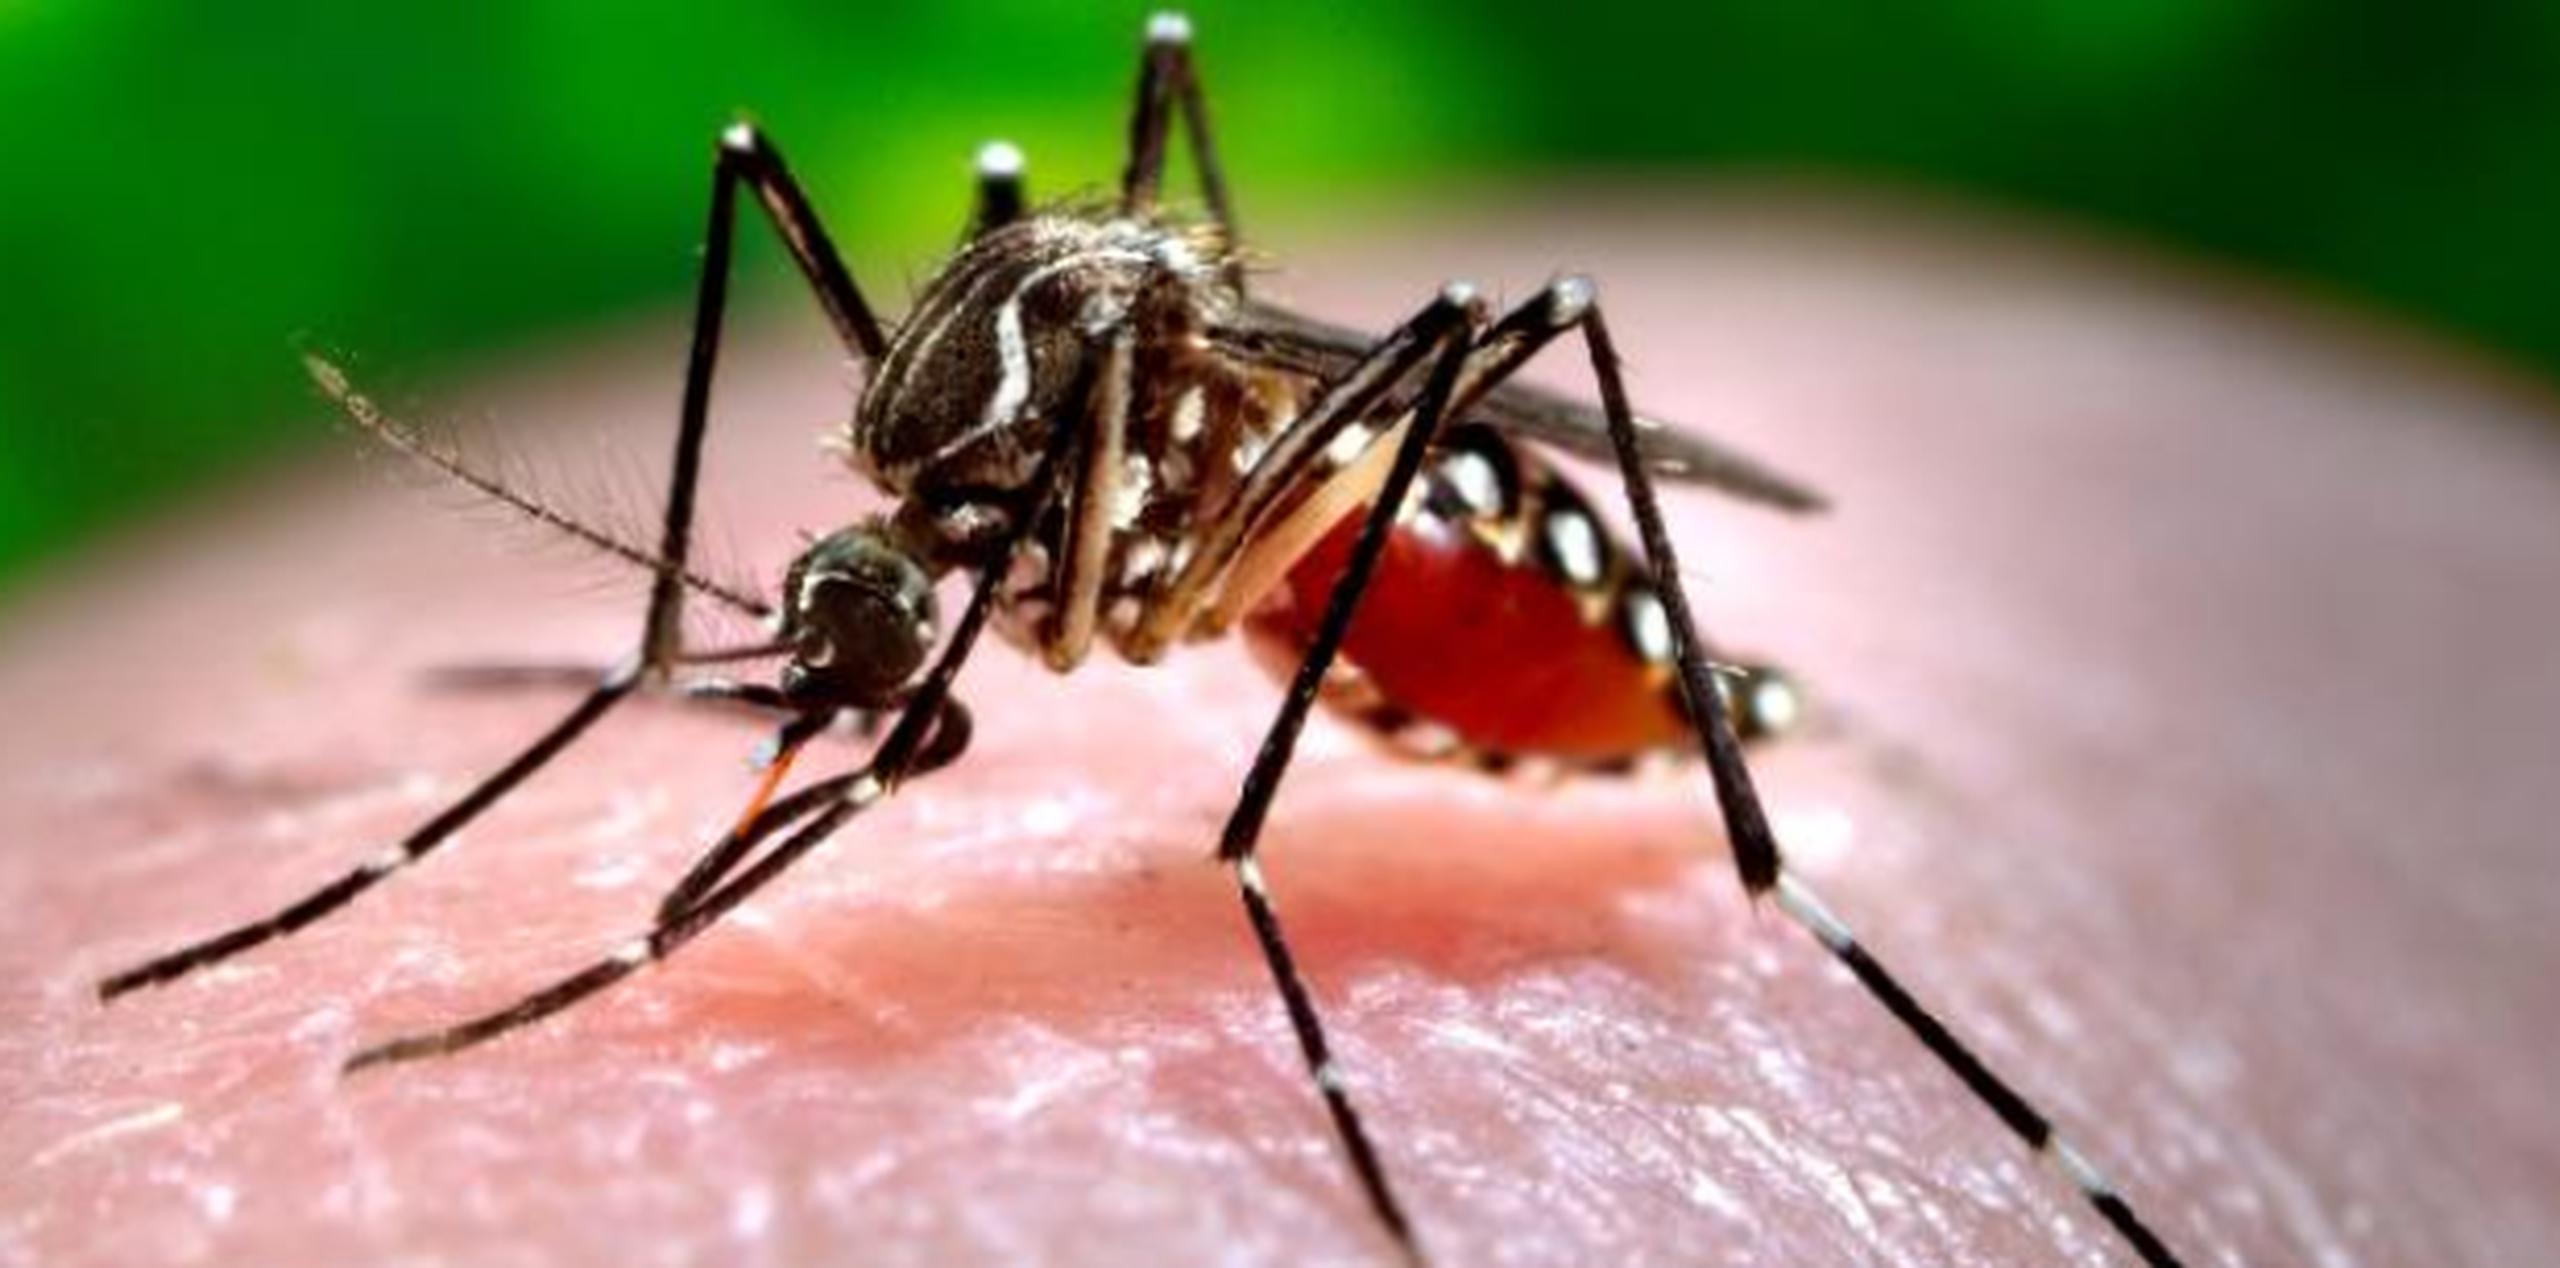 Salud exhortó a no bajar la guardia contra el mosquito que transmite la enfermedad. (Archivo)